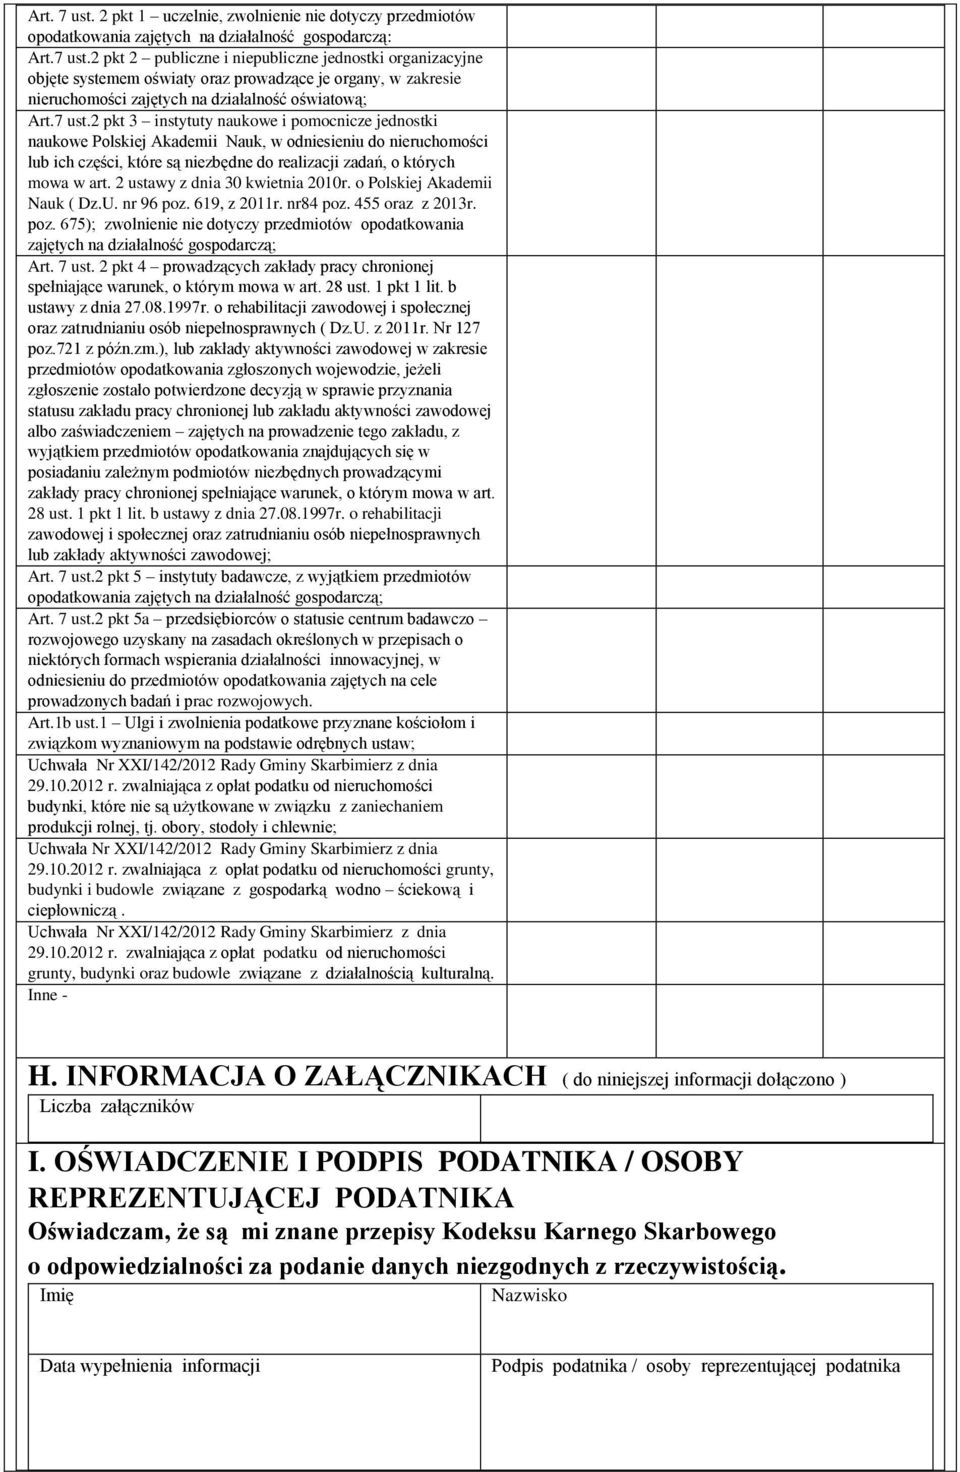 2 ustawy z dnia 30 kwietnia 2010r. o Polskiej Akademii Nauk ( Dz.U. nr 96 poz. 619, z 2011r. nr84 poz. 455 oraz z 2013r. poz. 675); zwolnienie nie dotyczy przedmiotów opodatkowania zajętych na działalność gospodarczą; Art.